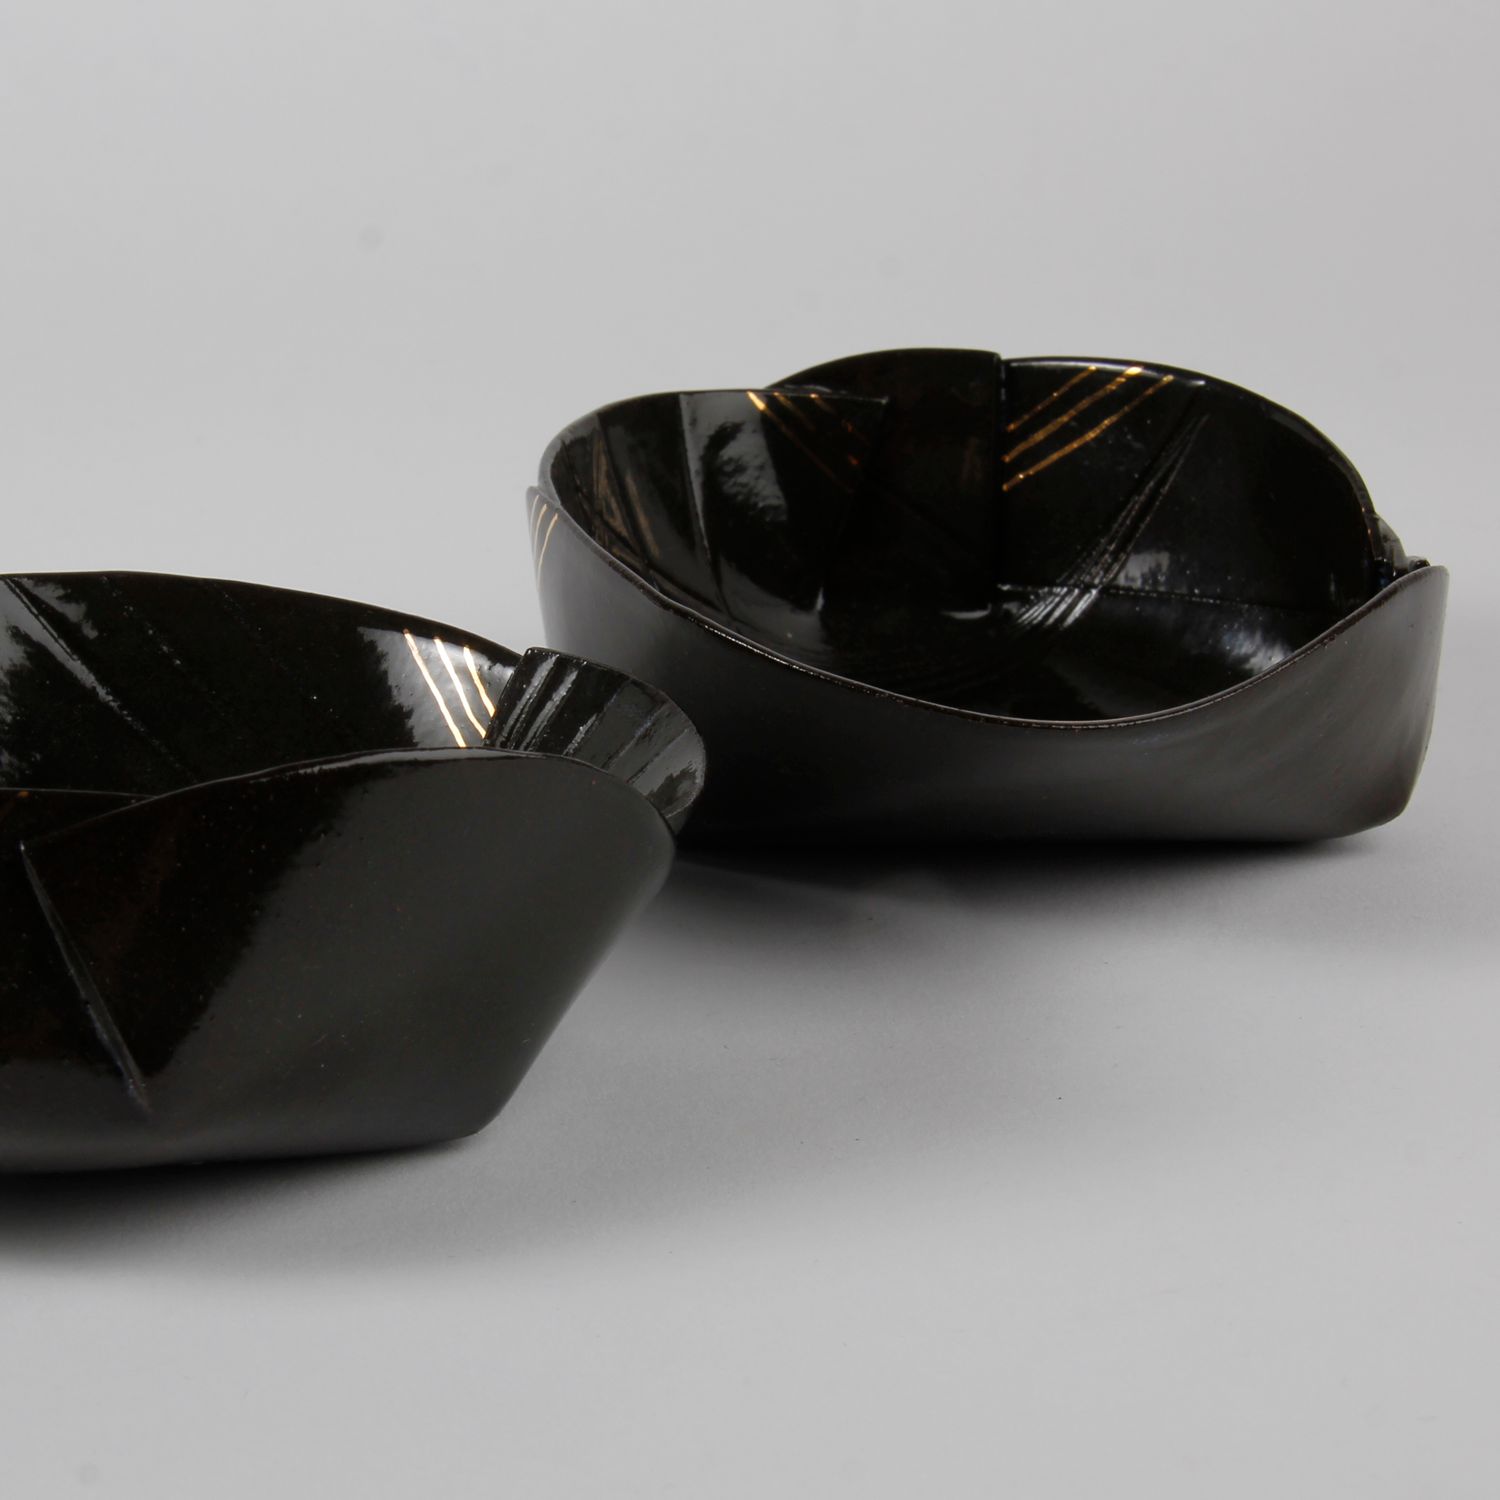 Natalie Waddell: XX Large Black Folded Bowl Product Image 3 of 4